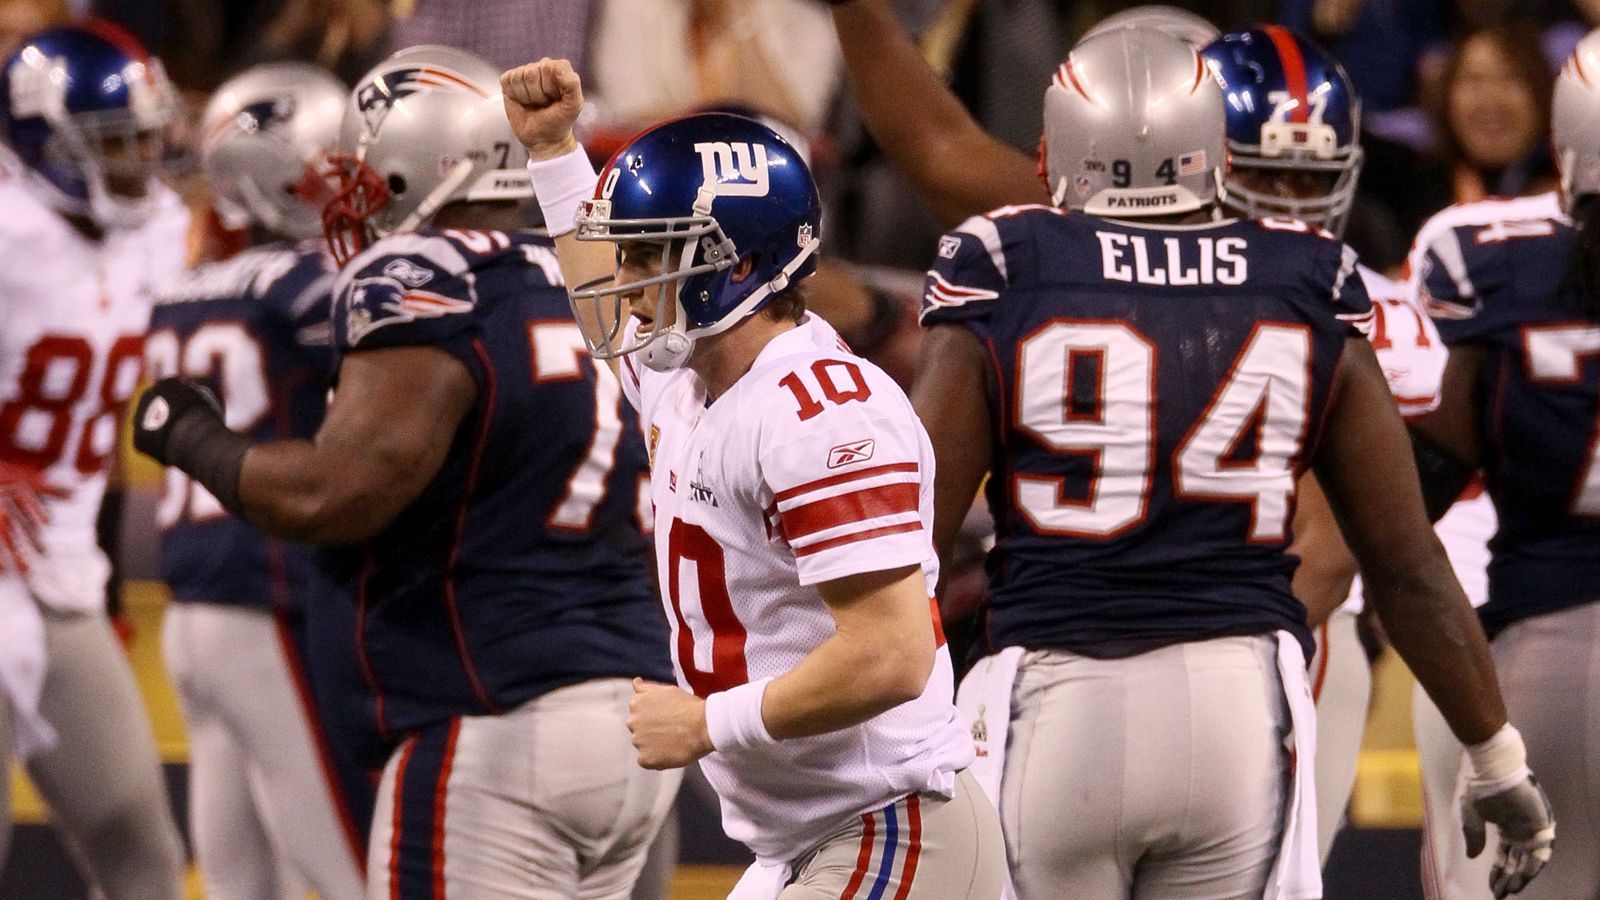 
                <strong>2012 - Super Bowl XLVI - New York Giants</strong><br>
                2012 kam es zwischen den New York Giants und den New England Patriots zur Neuauflage des Super Bowls von 2008. Und wieder siegten die Giants, die mit Eli Manning erneut den MVP in ihren Reihen hatten. 21:17 lautete diesmal das Endresultat.
              